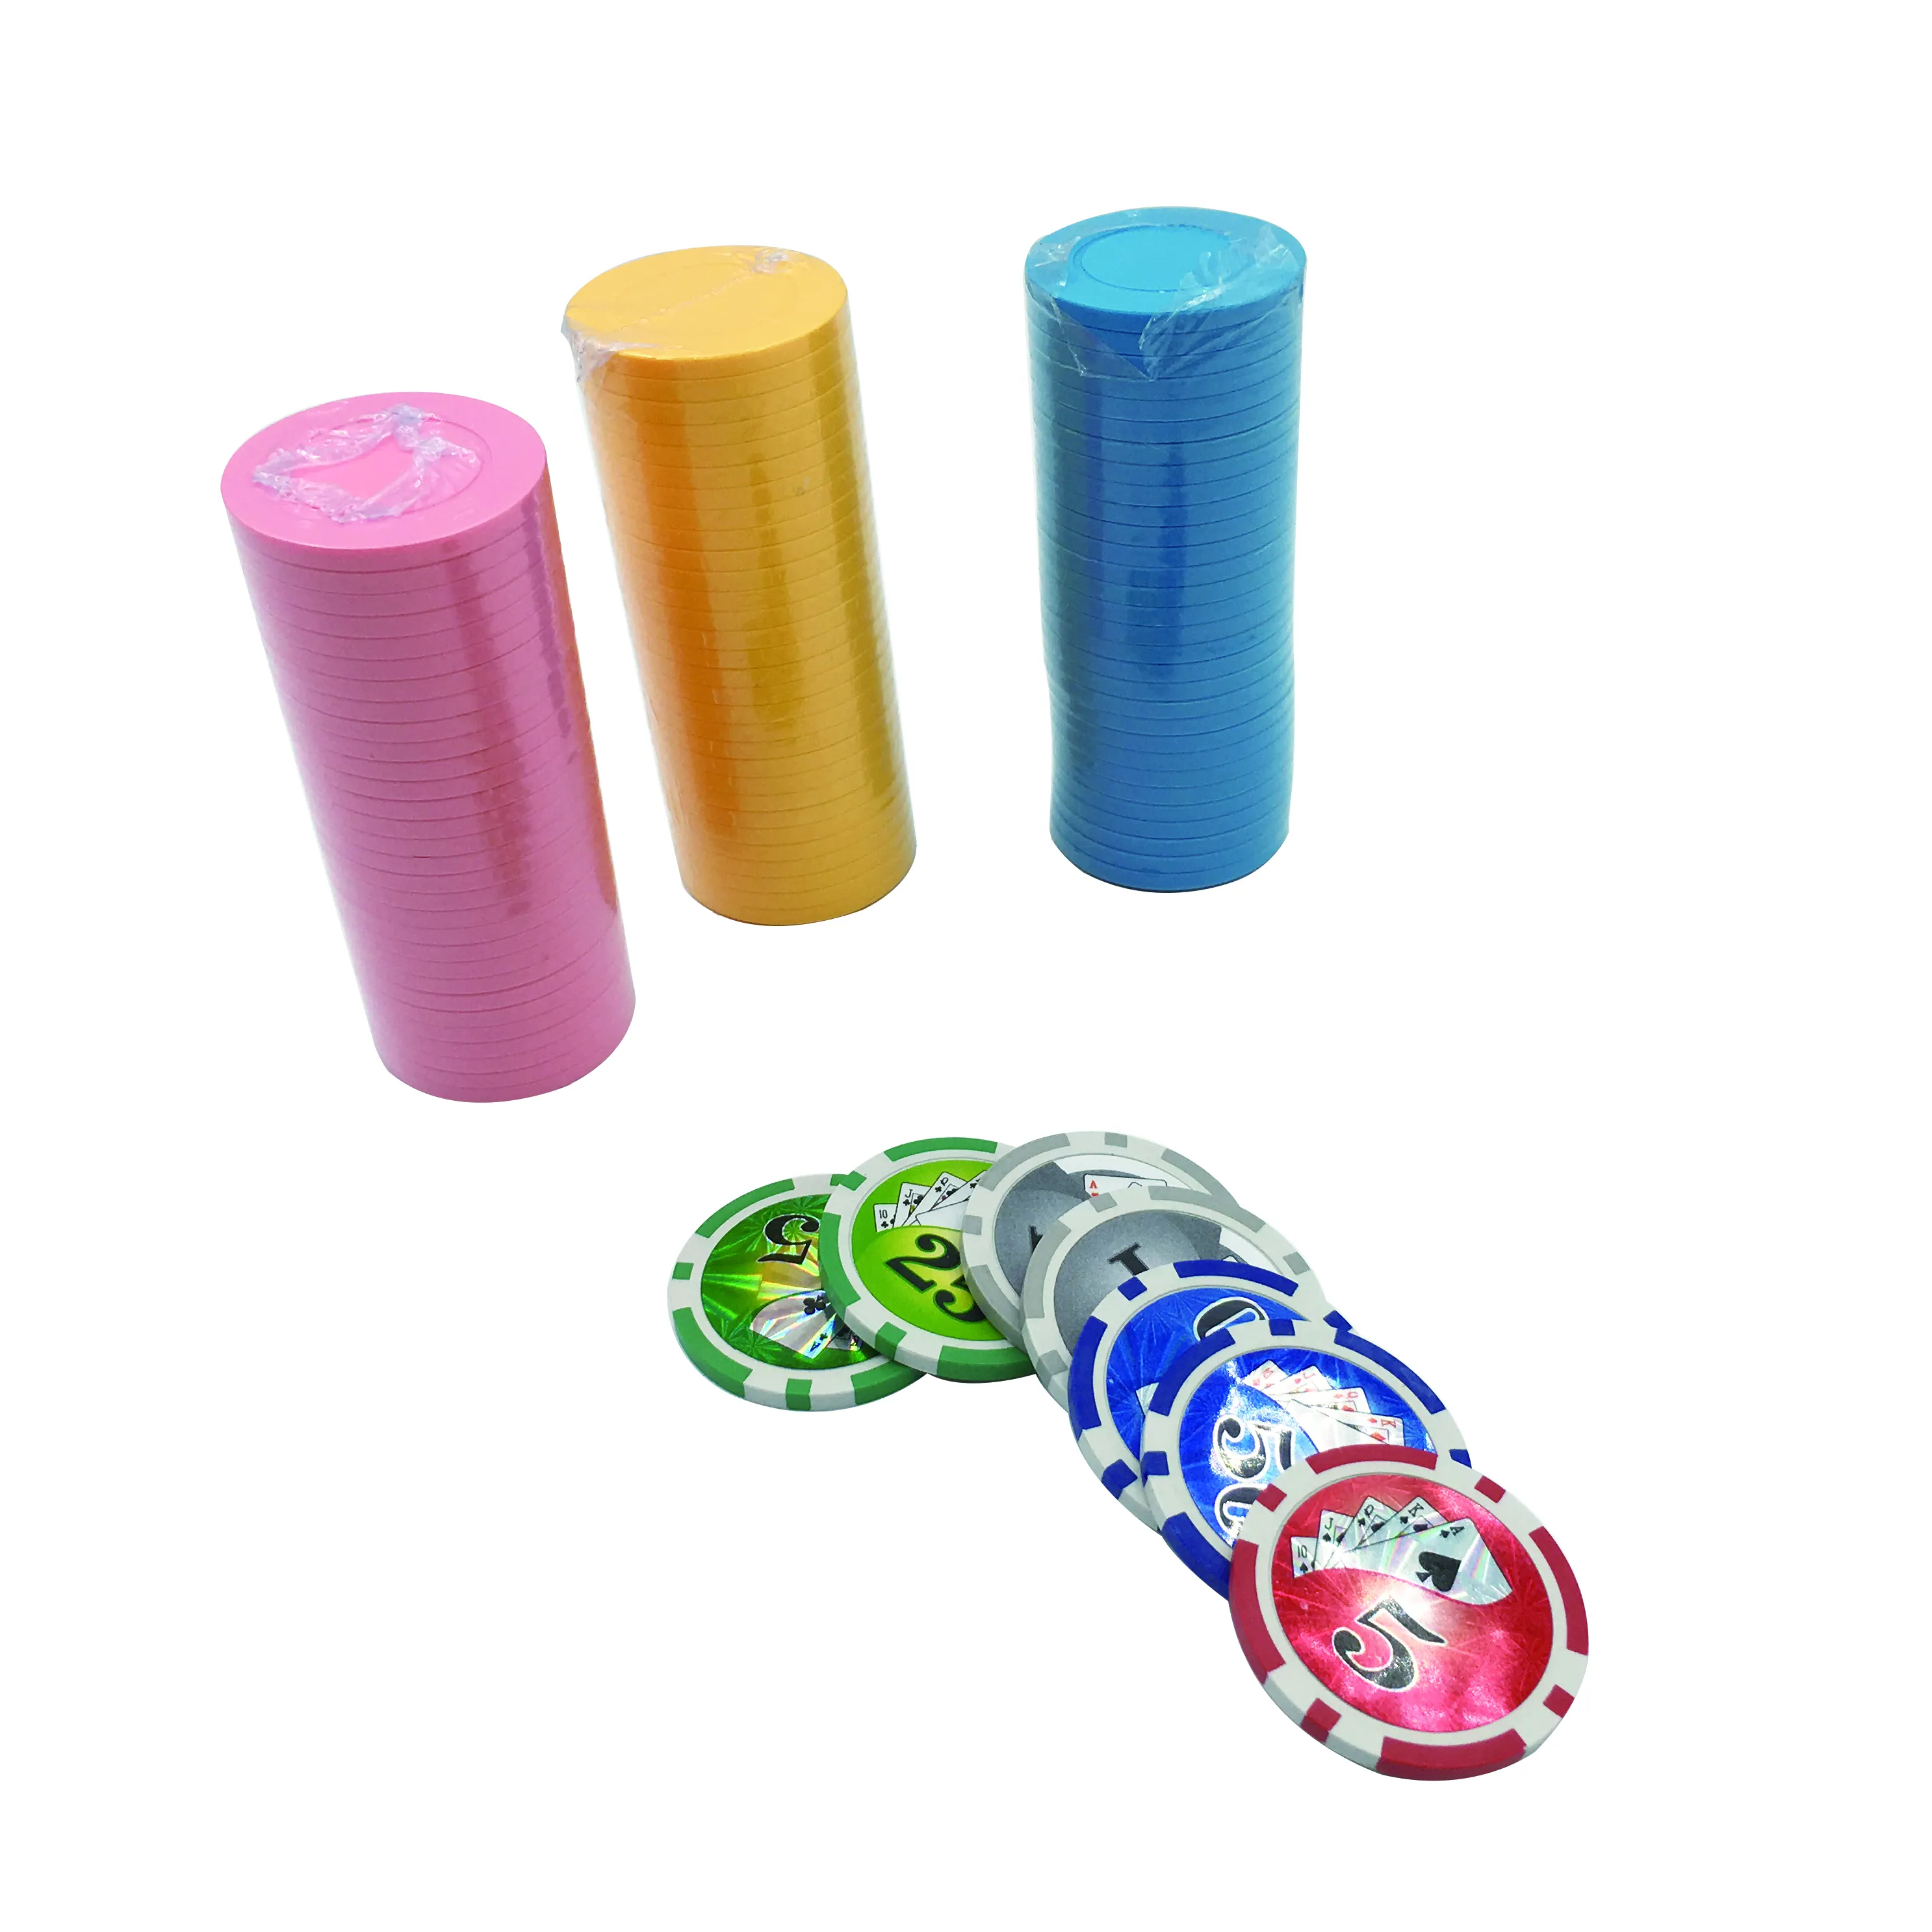 Vente en gros de jetons en argile personnalisés de haute qualité avec cartes à jouer casino poker jetons en métal et en plastique